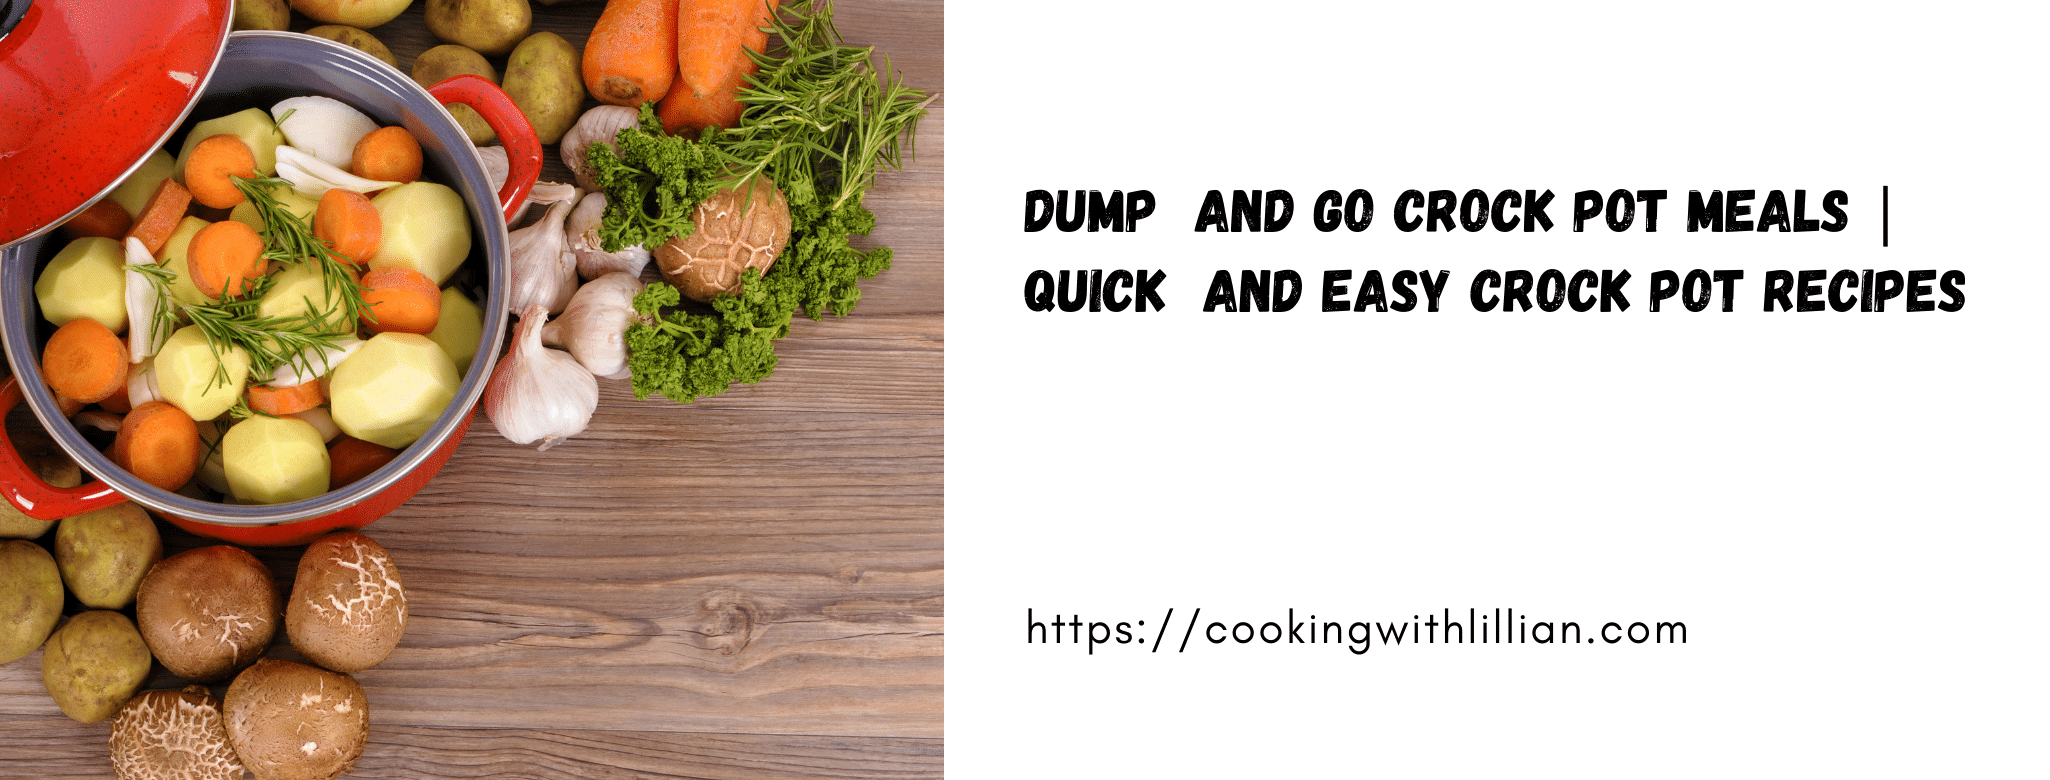 DUMP & GO CROCK POT MEALS | QUICK & EASY CROCK POT RECIPES